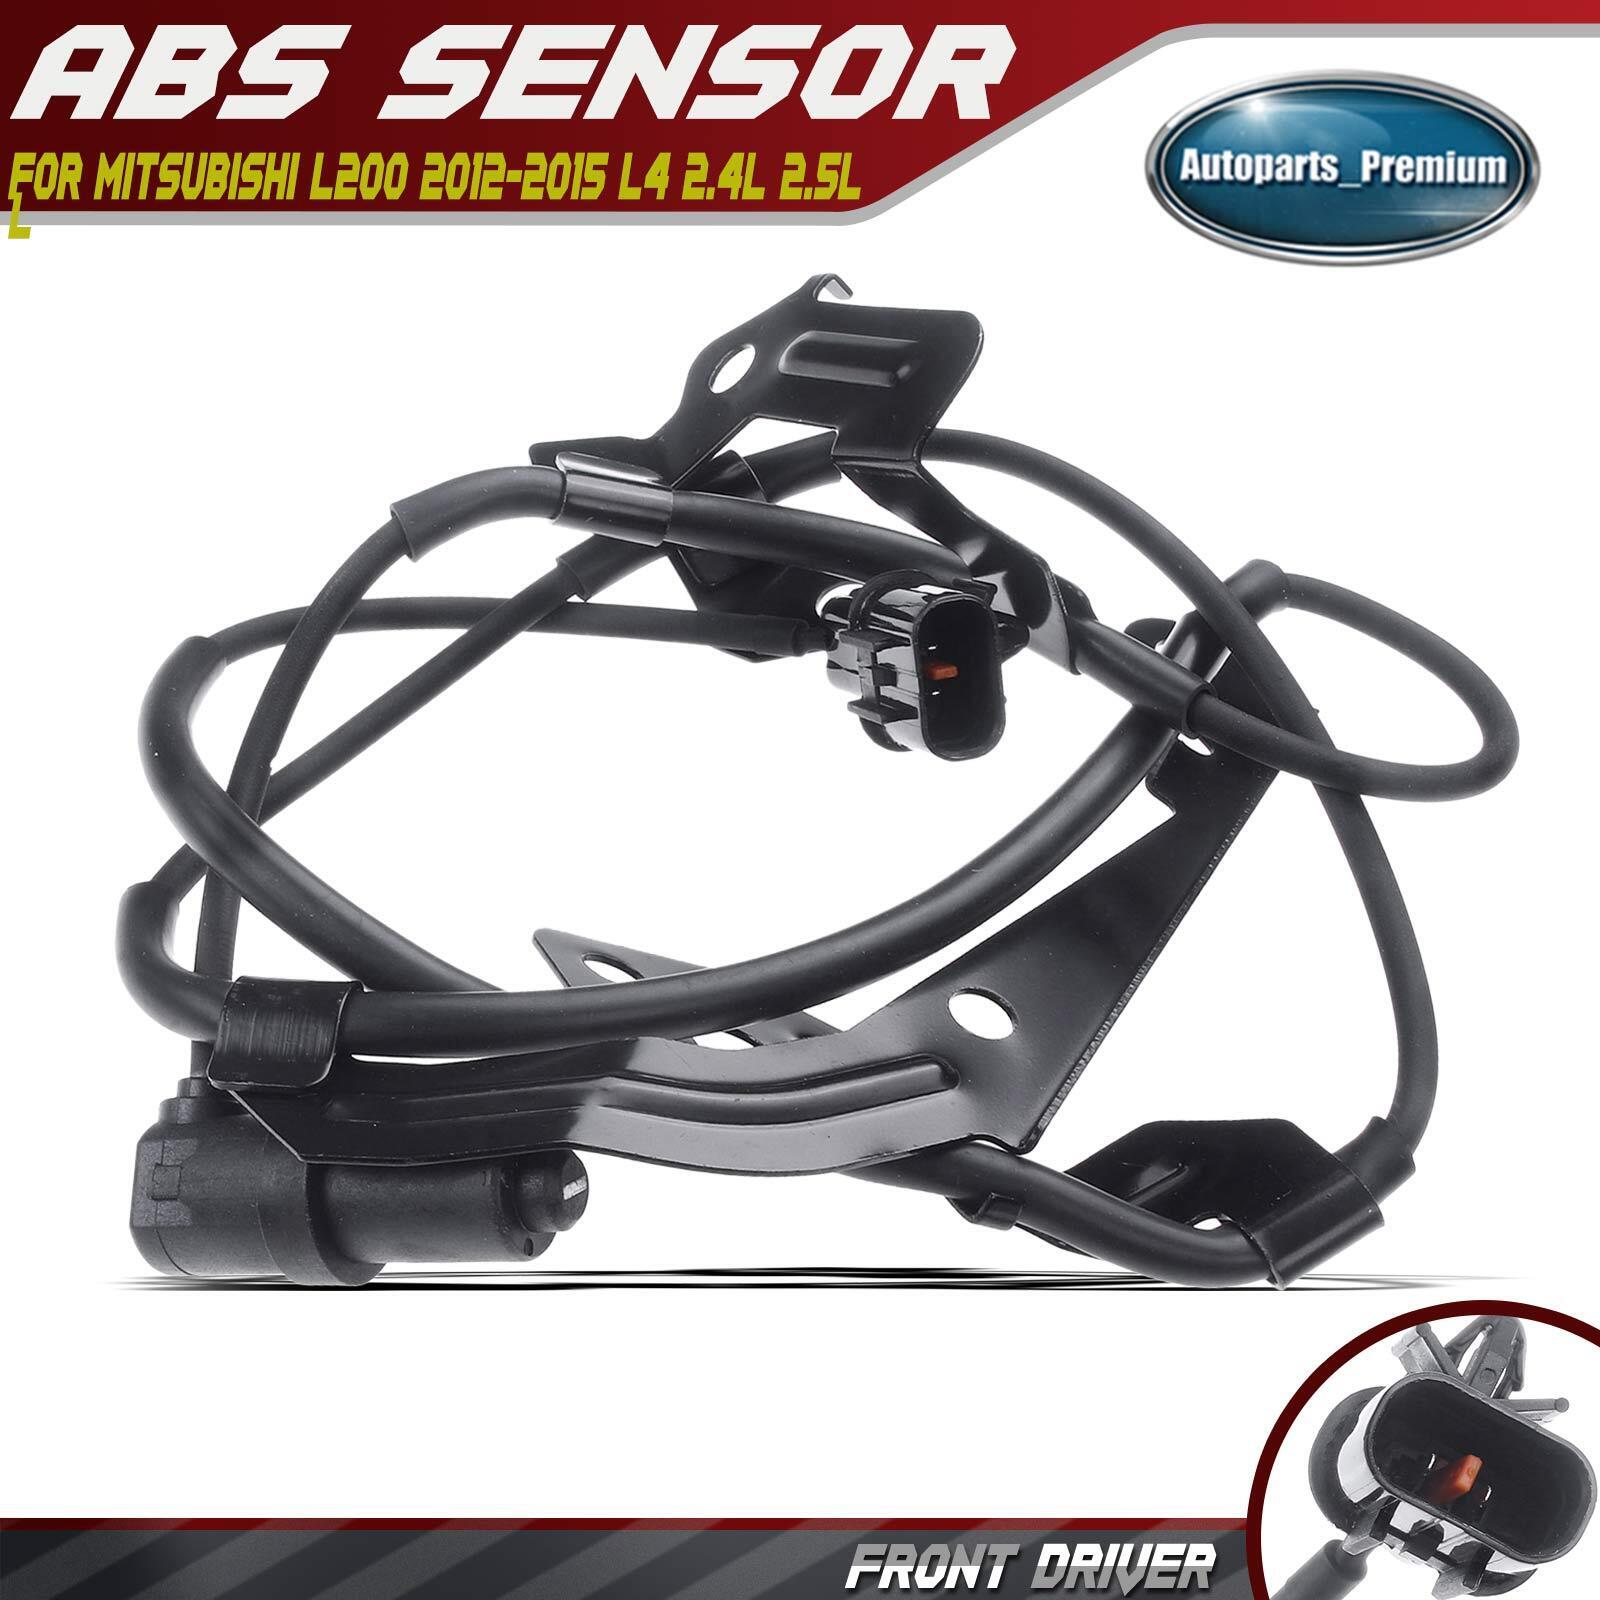 ABS Wheel Speed Sensor for Mitsubishi L200 2012-2015 L4 2.4L 2.5L Front Right RH